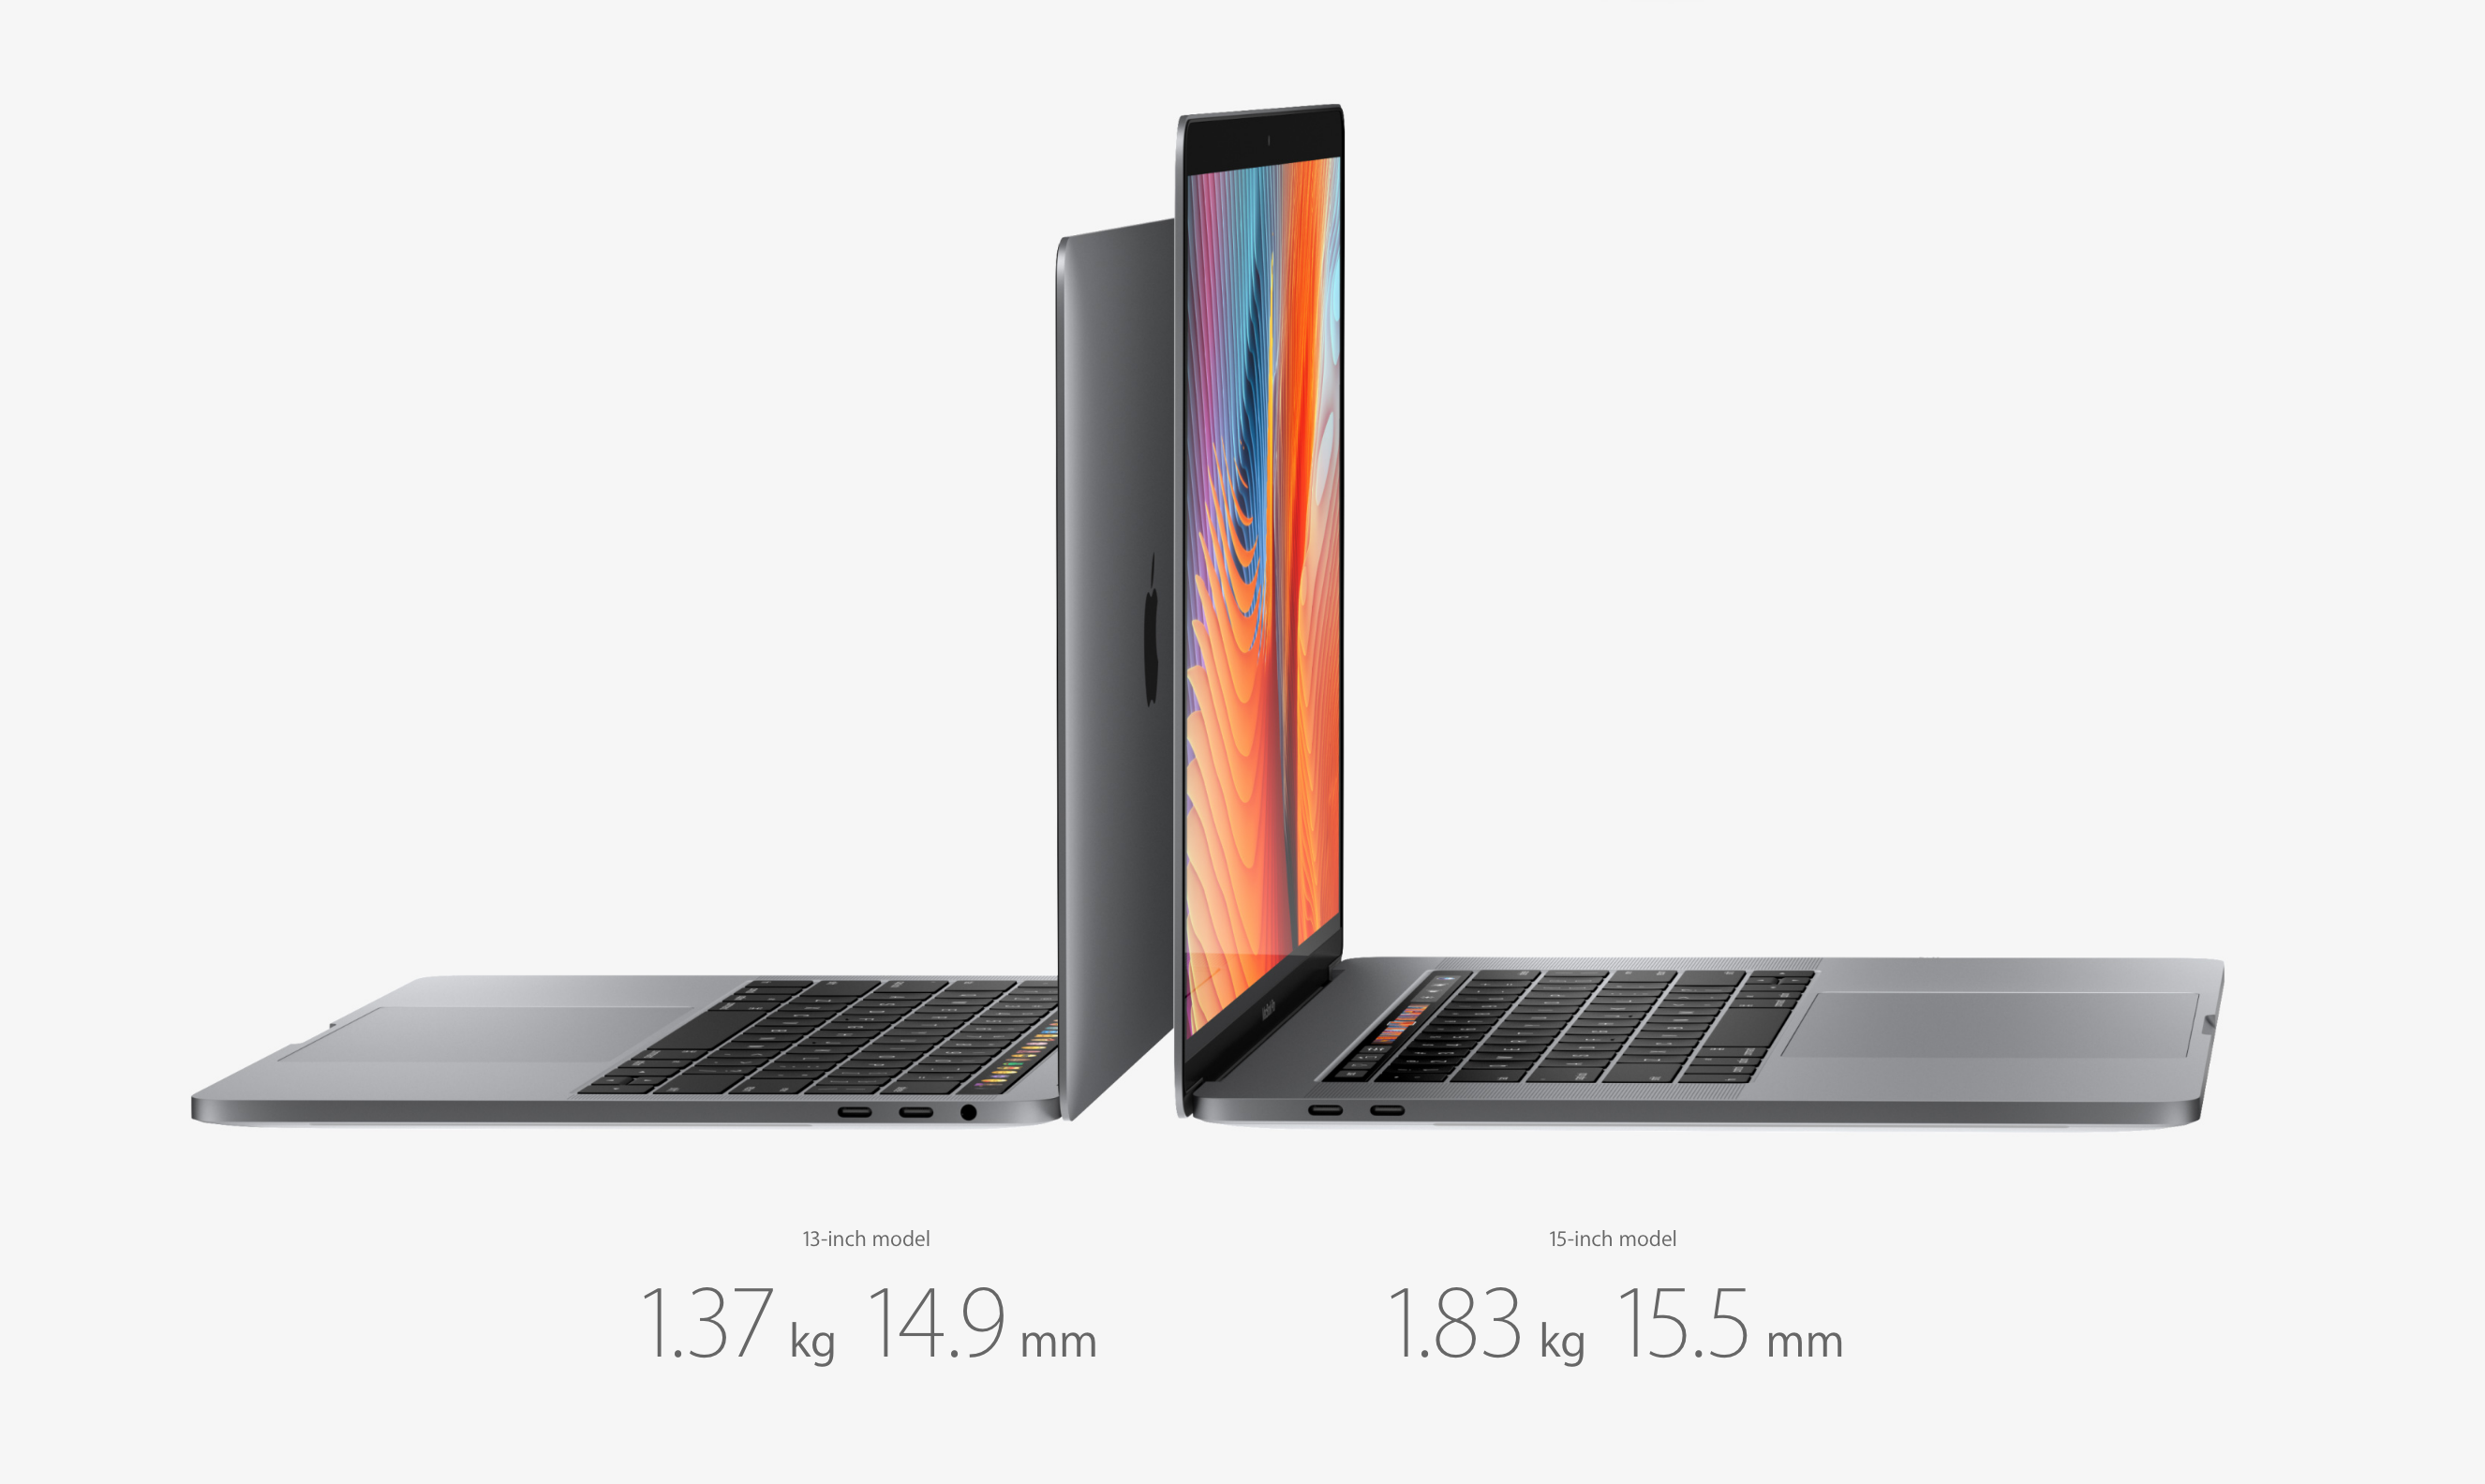 New Macbook and Macbook Pro 2017